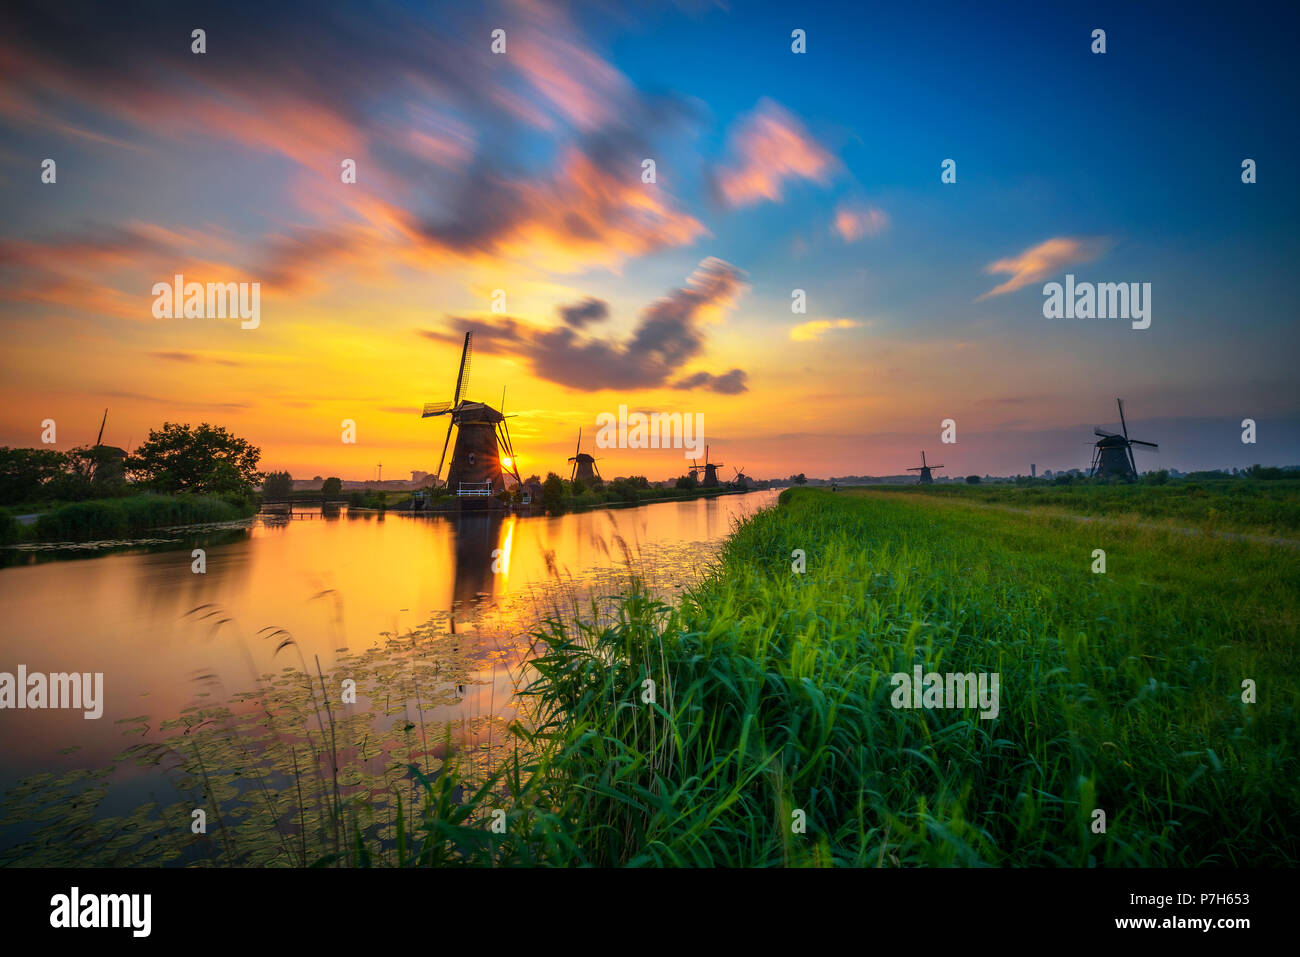 Magnifique coucher de soleil au-dessus de vieux moulins à vent hollandais et un canal à Kinderdijk, Pays-Bas. Longue exposition. Banque D'Images